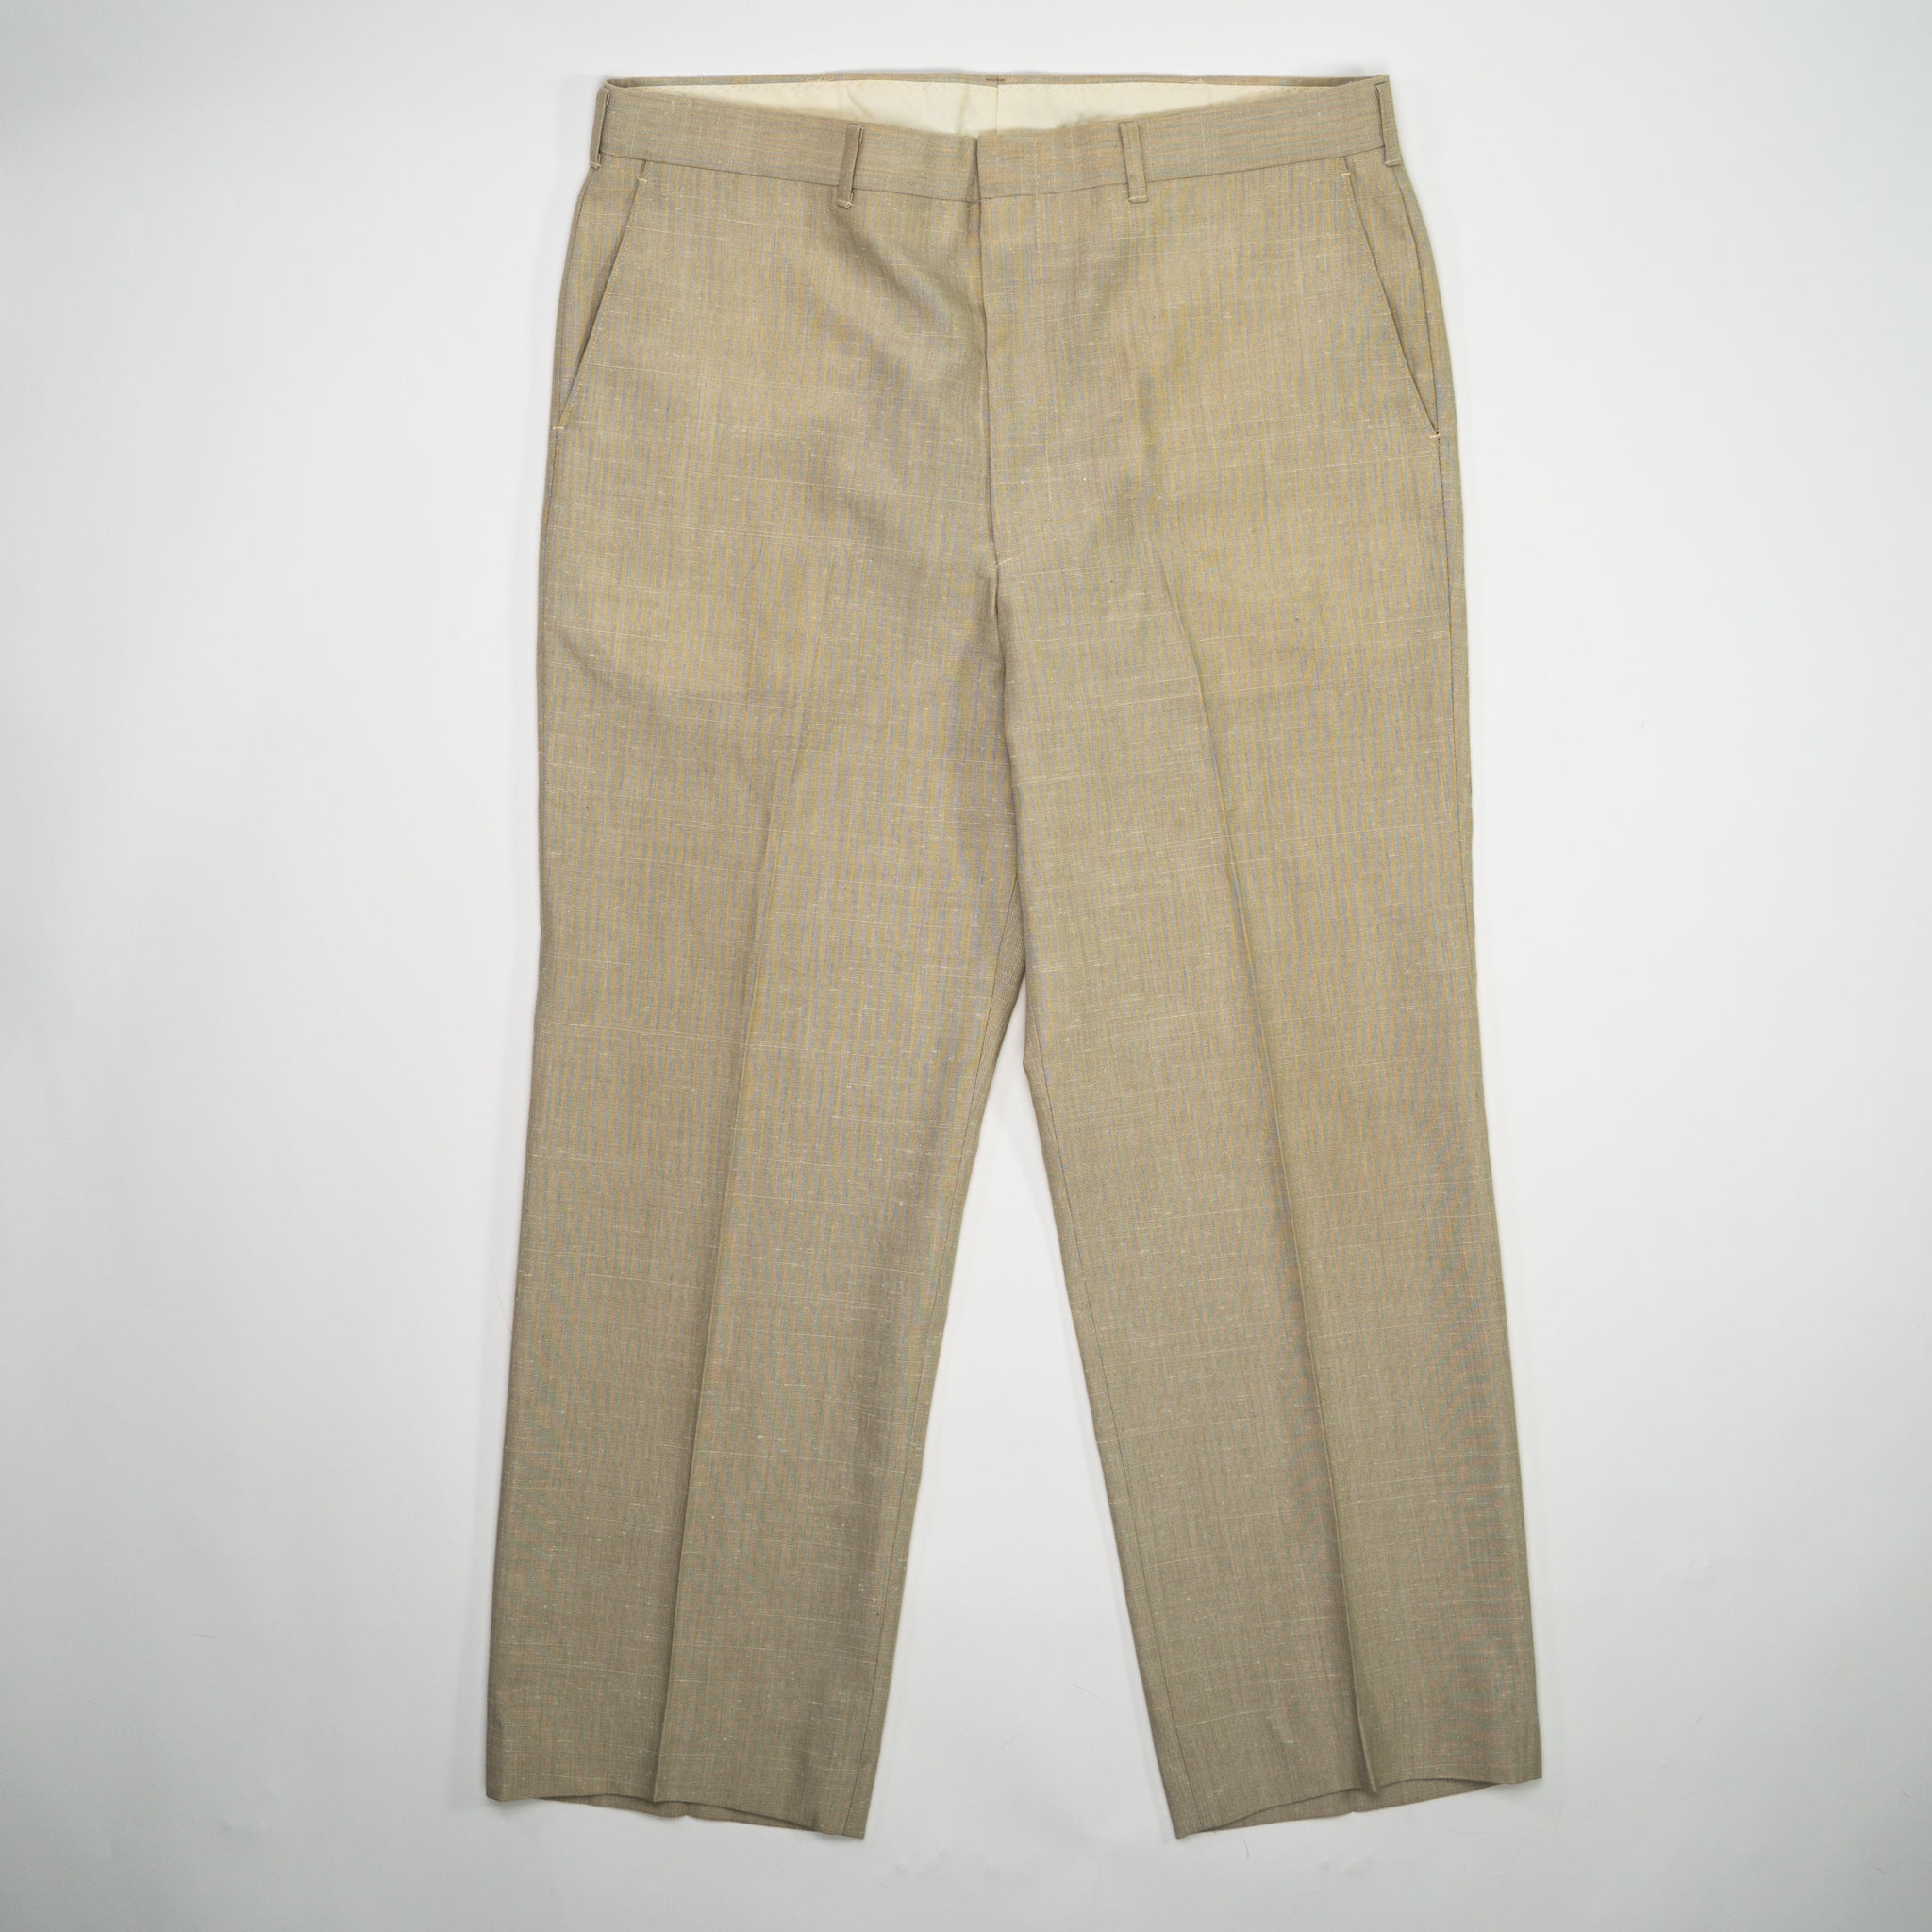 Vintage 70s Light Beige Haggar's Linen Dress Pants (36 x 29)#N ...